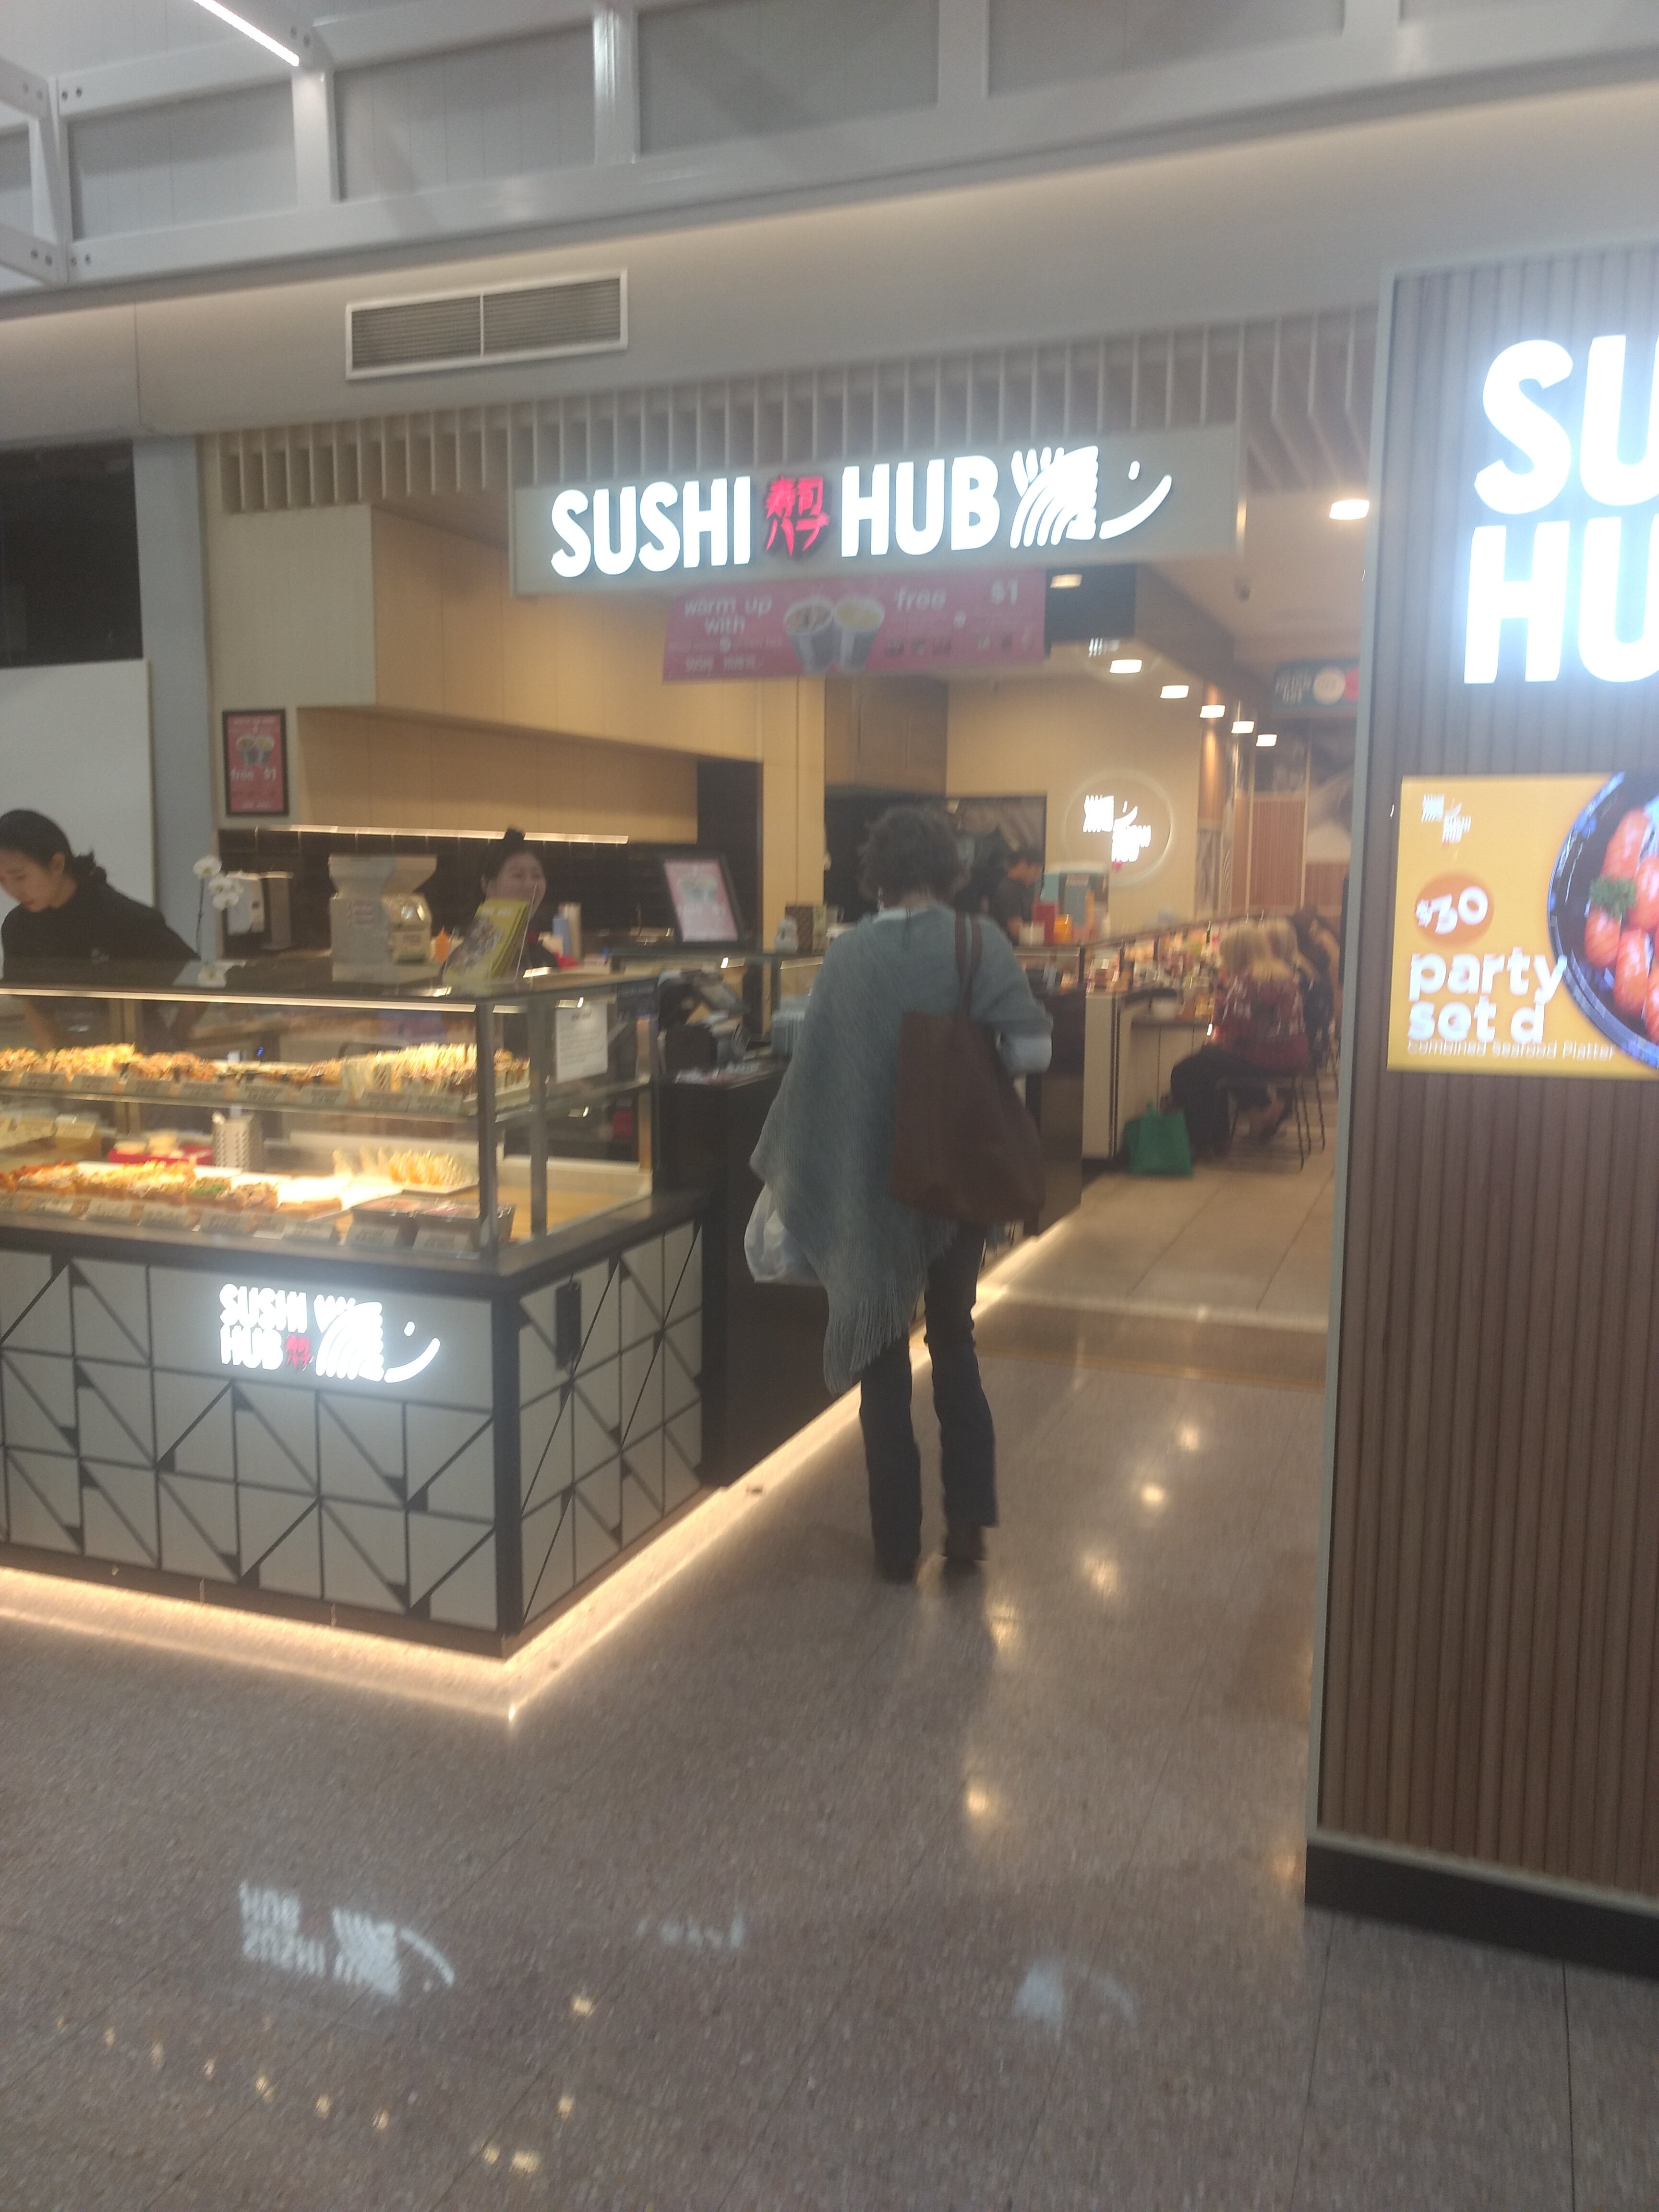 Sushi Hub